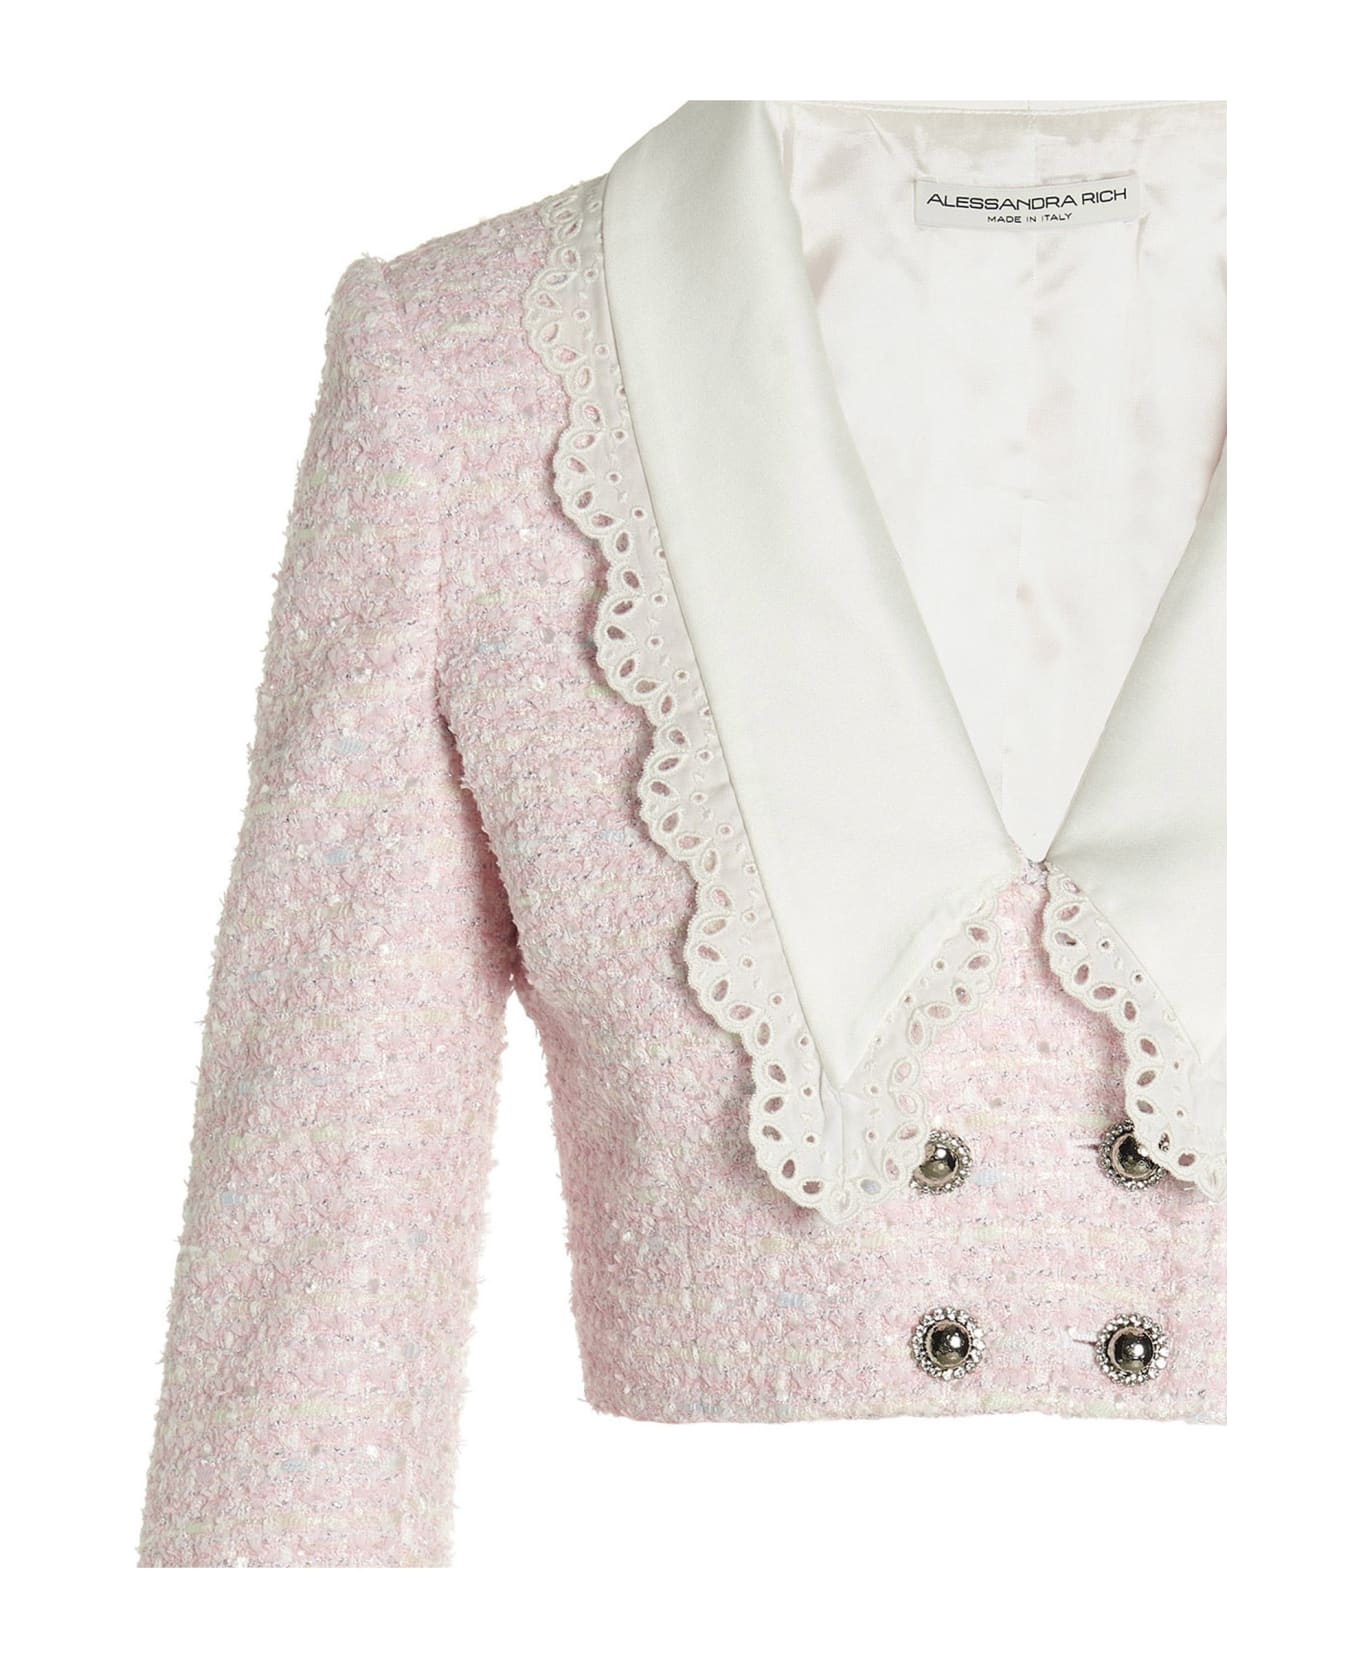 Alessandra Rich 'tweed Lurex' Cropped Jacket - PINK/WHITE